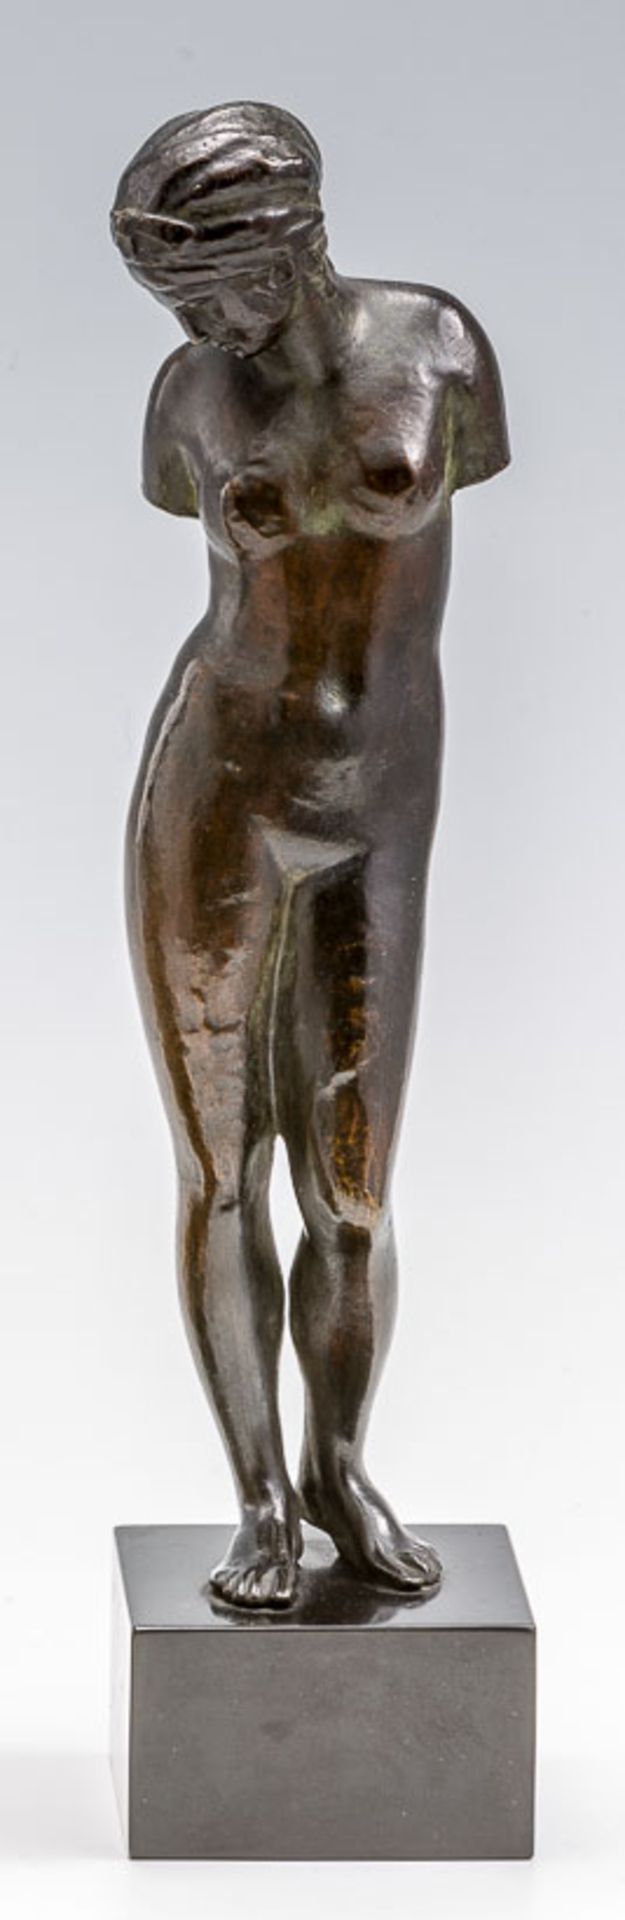 Stehender weiblicher Akt.Frei nach der antiken Venus von Esquilin. Bronze, braun patiniert.